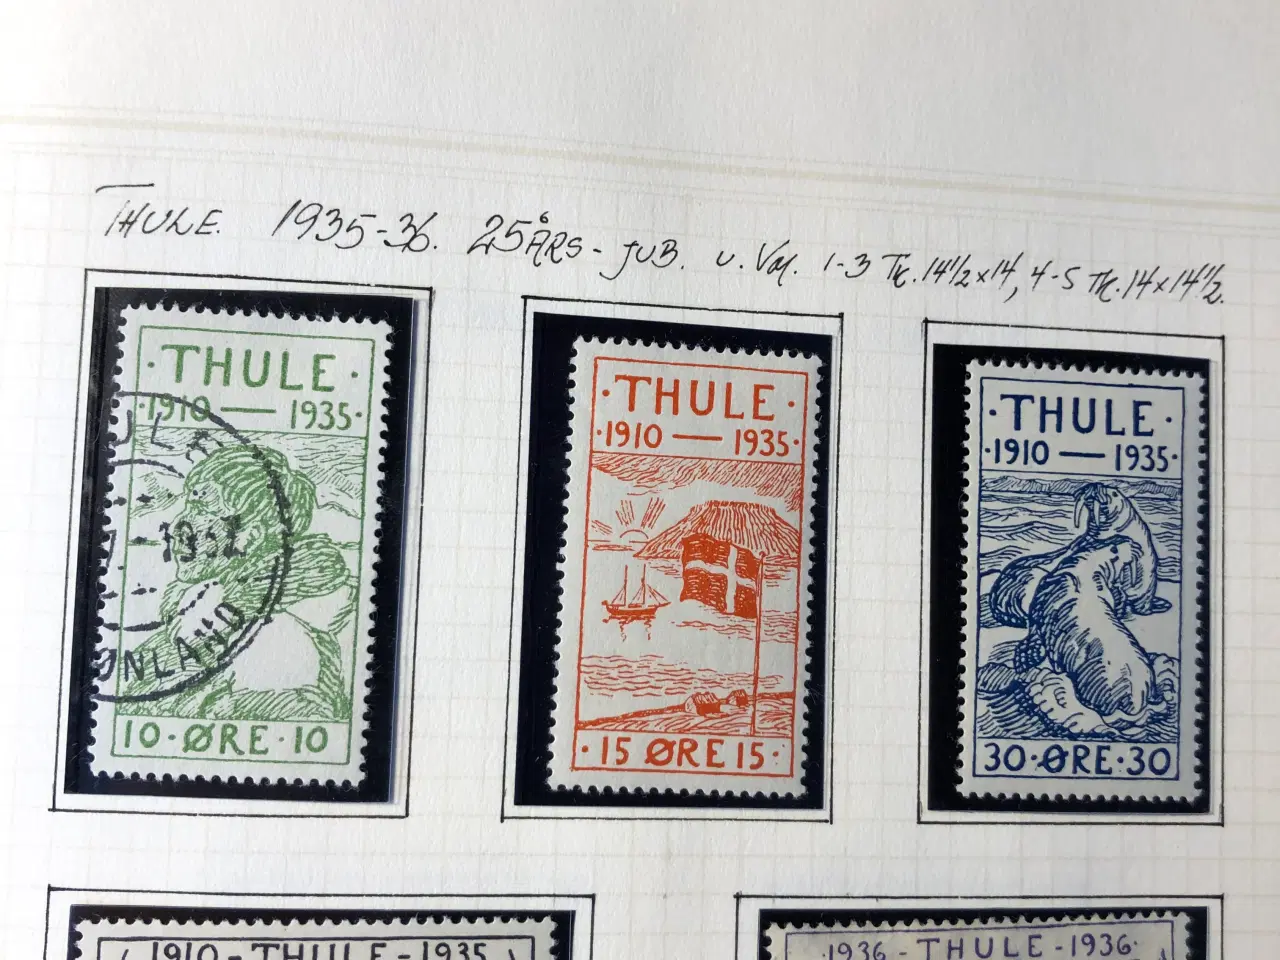 Billede 1 - Frimærker Thule-mærker fra 1935-36